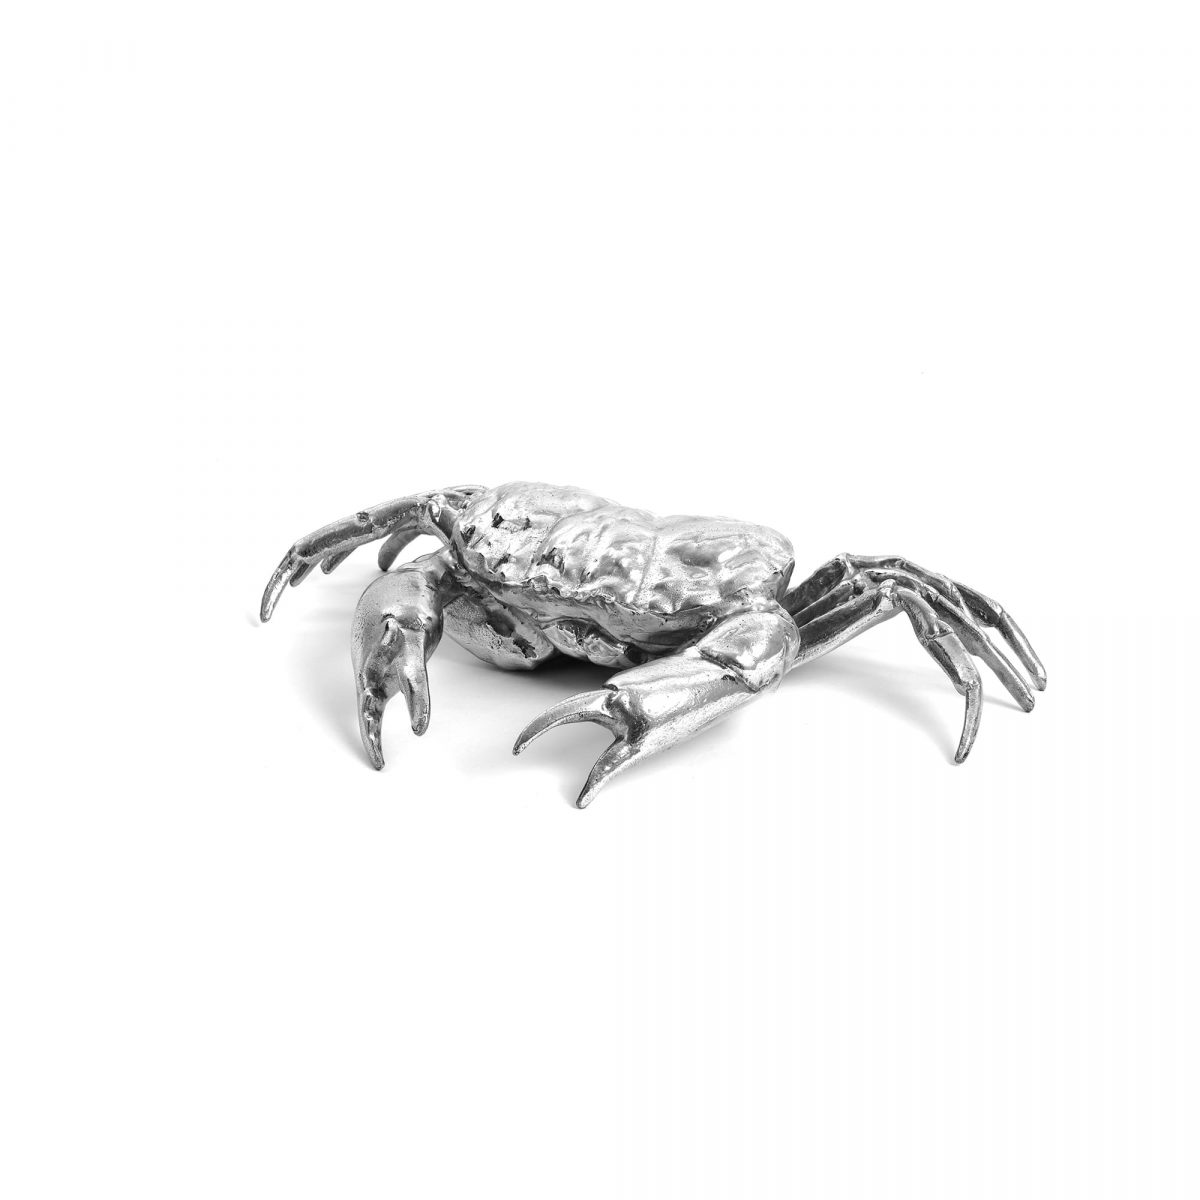 SELETTI DIESEL Wunderkrammer Crab